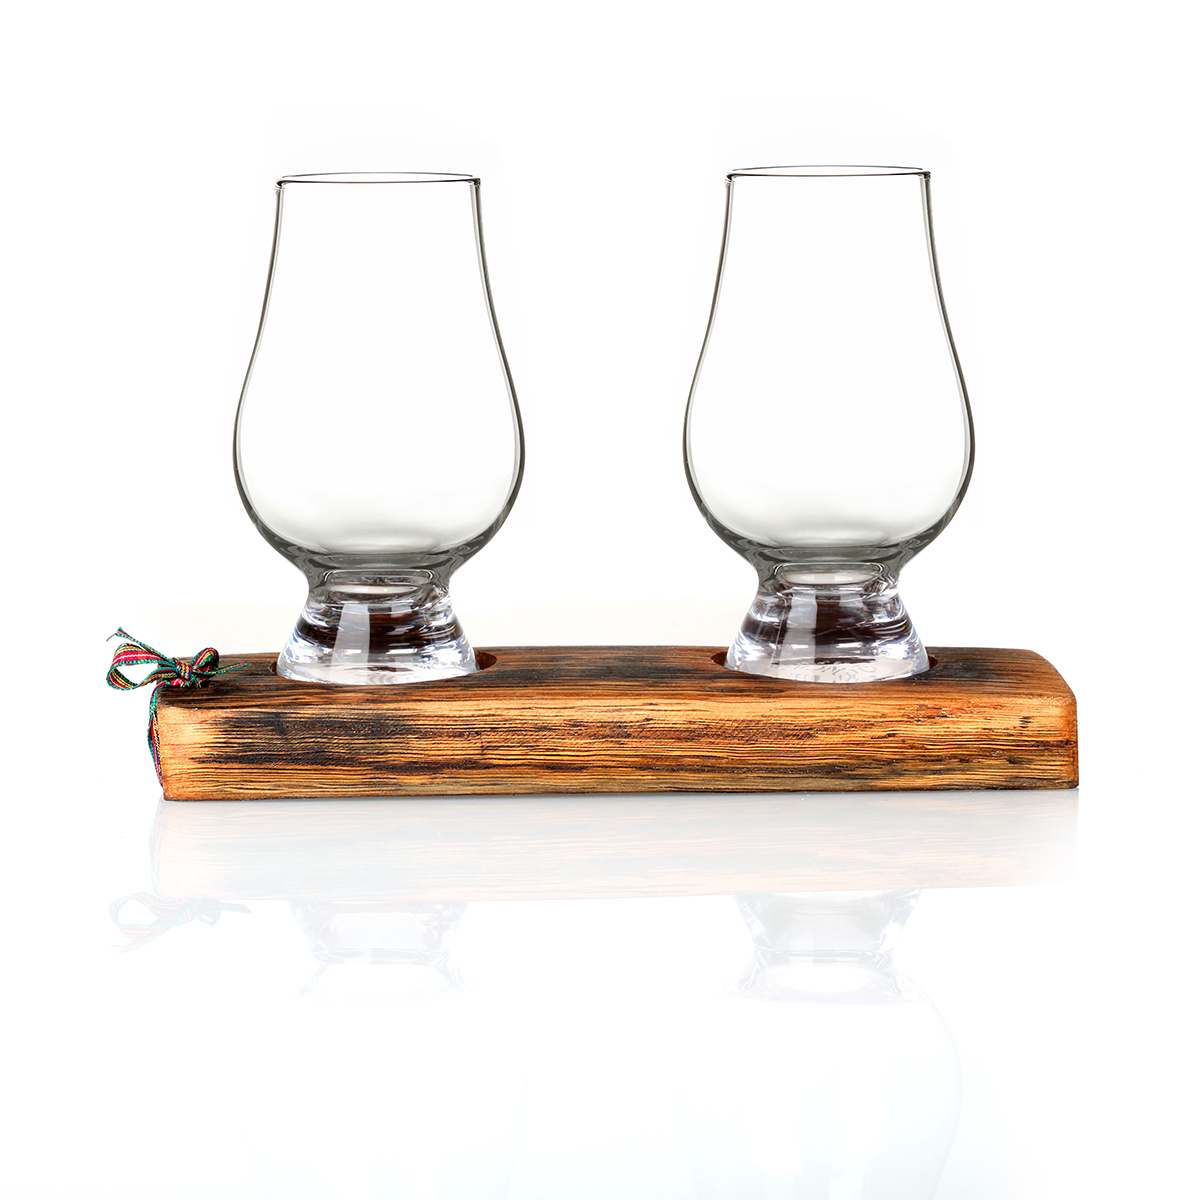 Whisky Fass Tasting Tray / Barrel Plinth aus Eiche mit 2 Gencairn Gläsern